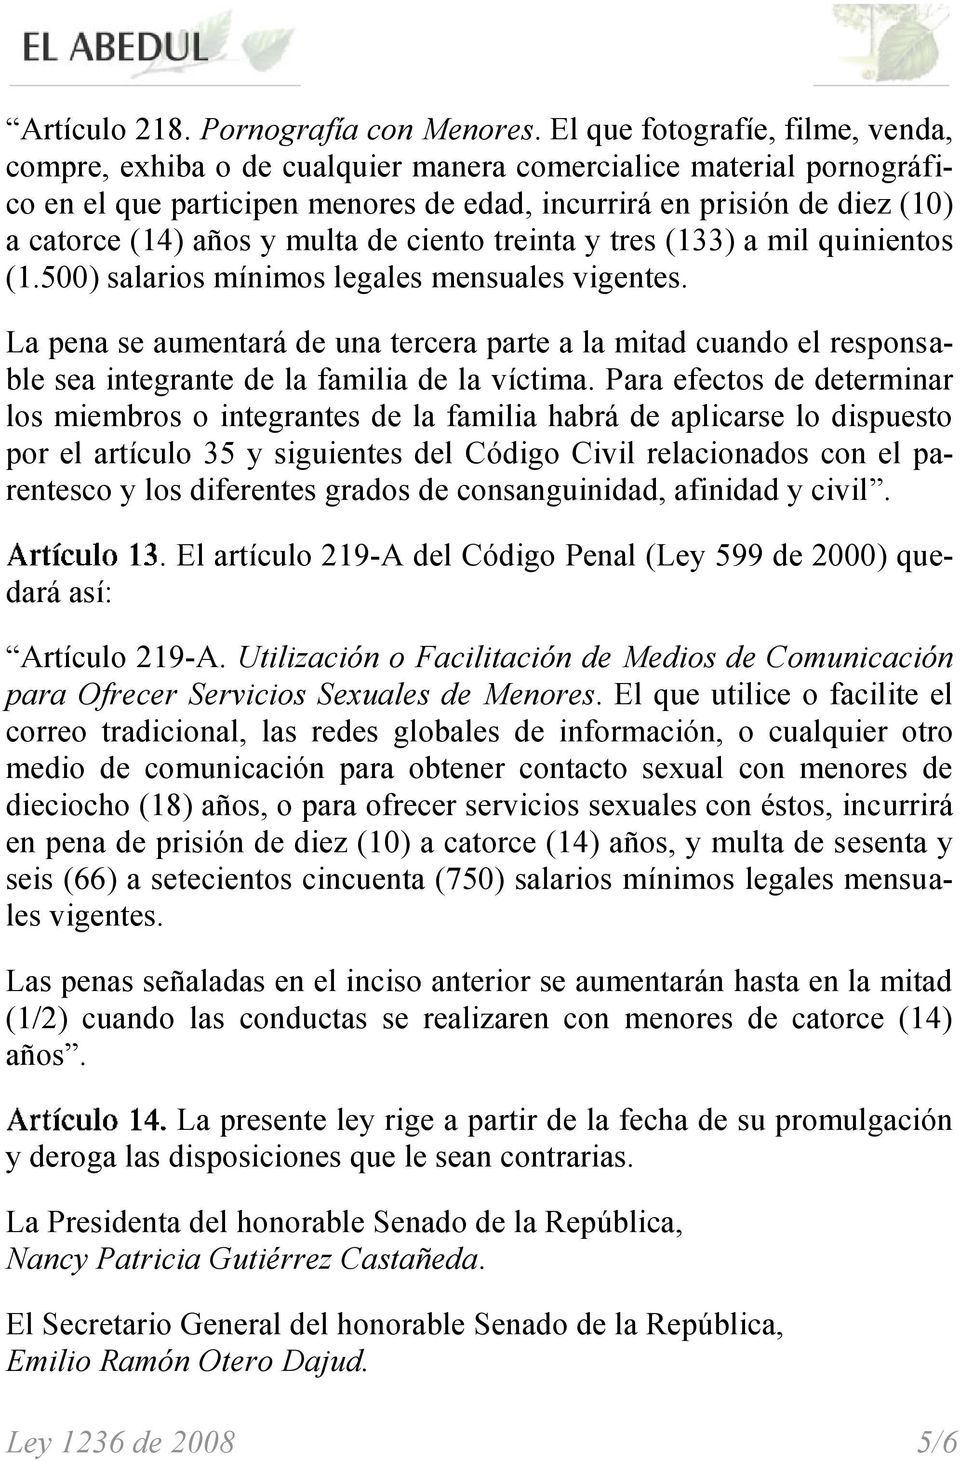 multa de ciento treinta y tres (133) a mil quinientos (1.500) salarios mínimos legales mensuales vigentes.